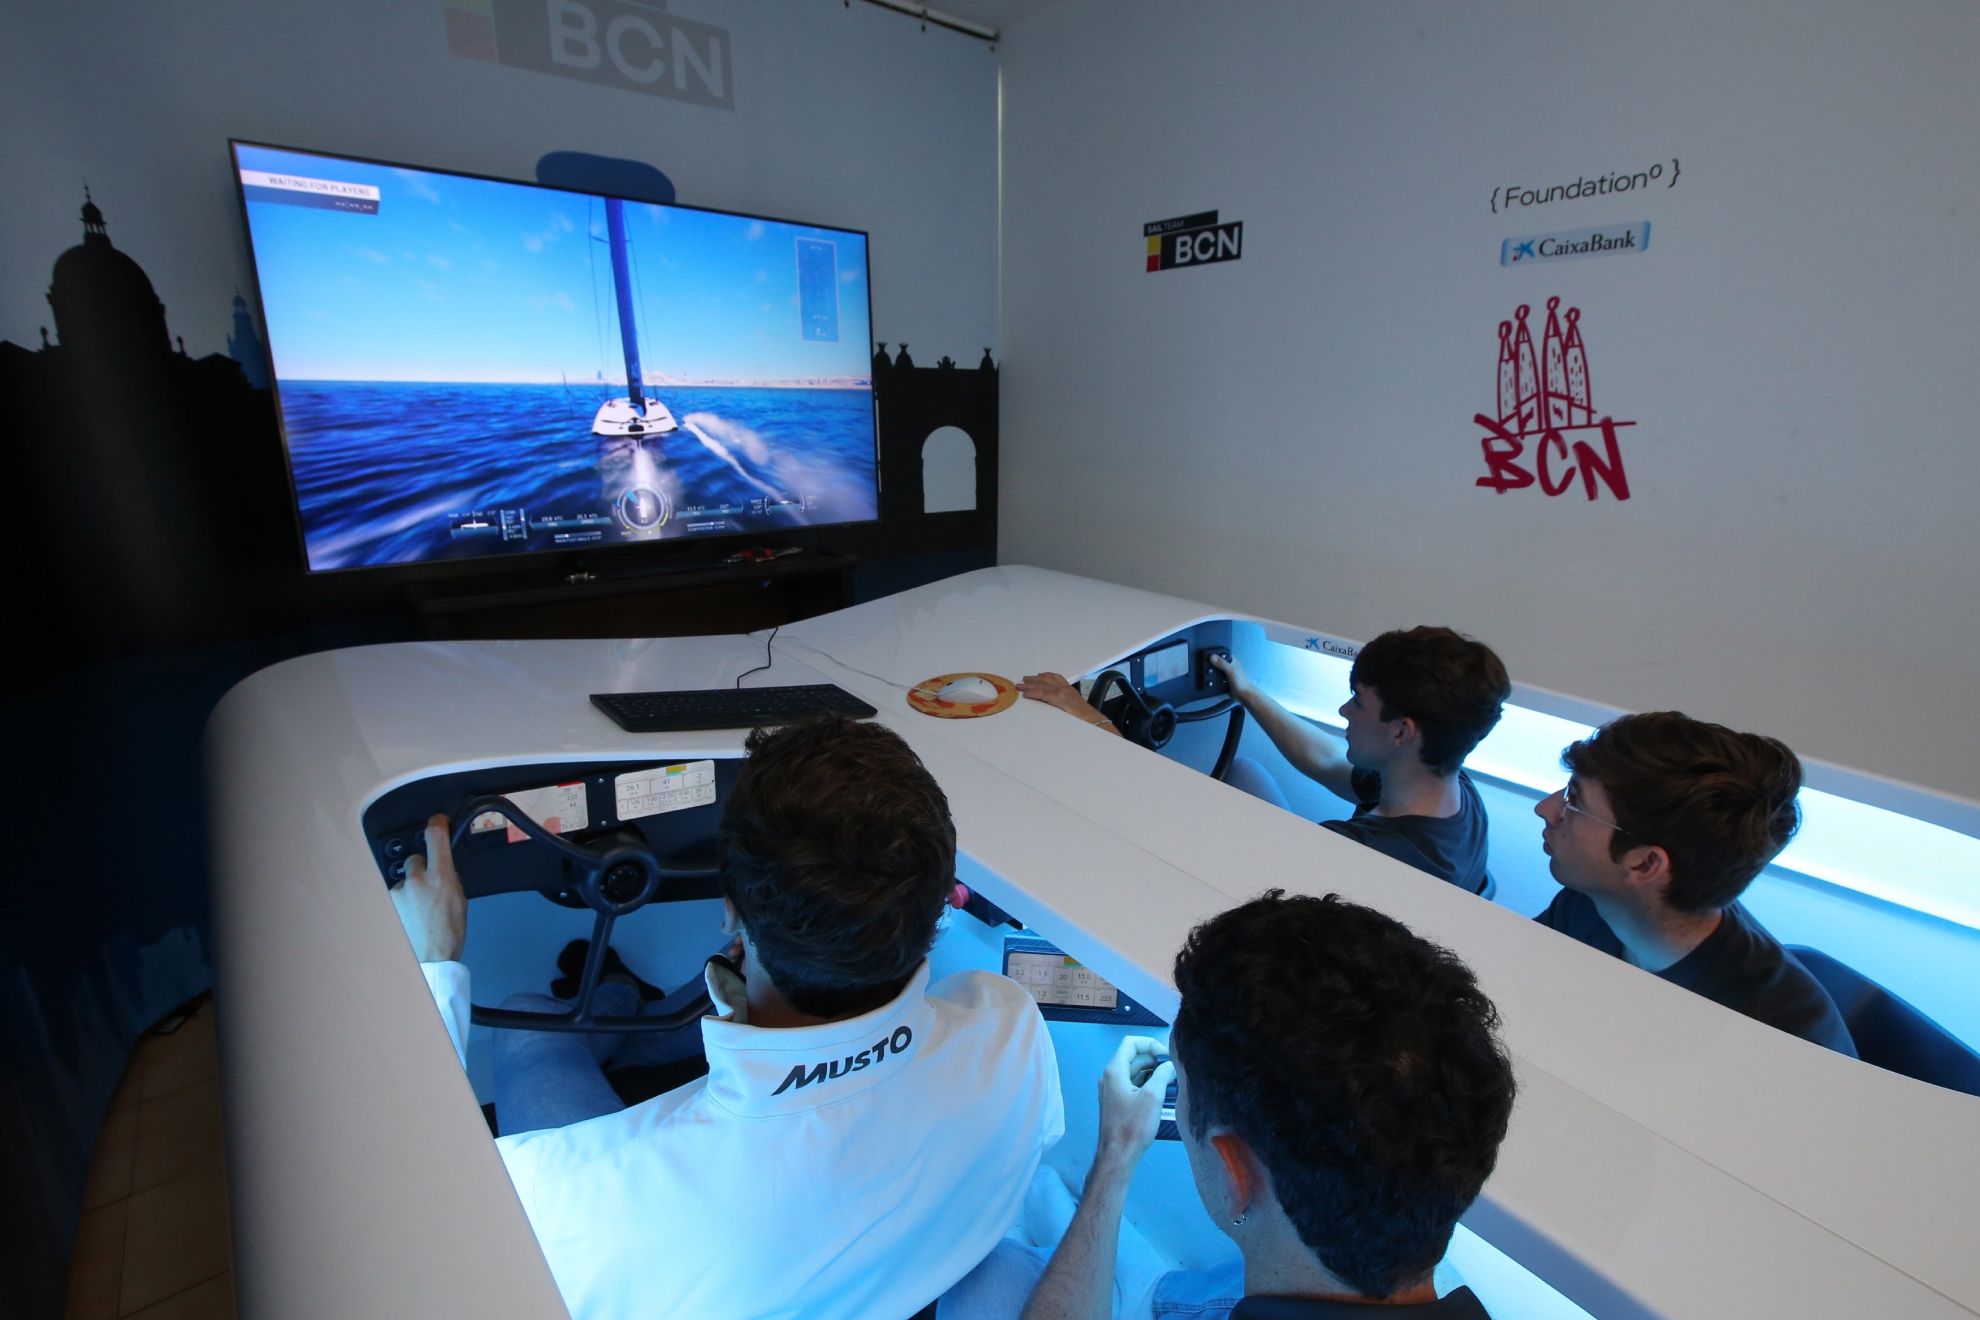 Los aspirantes al Sail Team BCN entrenando en el simulador.